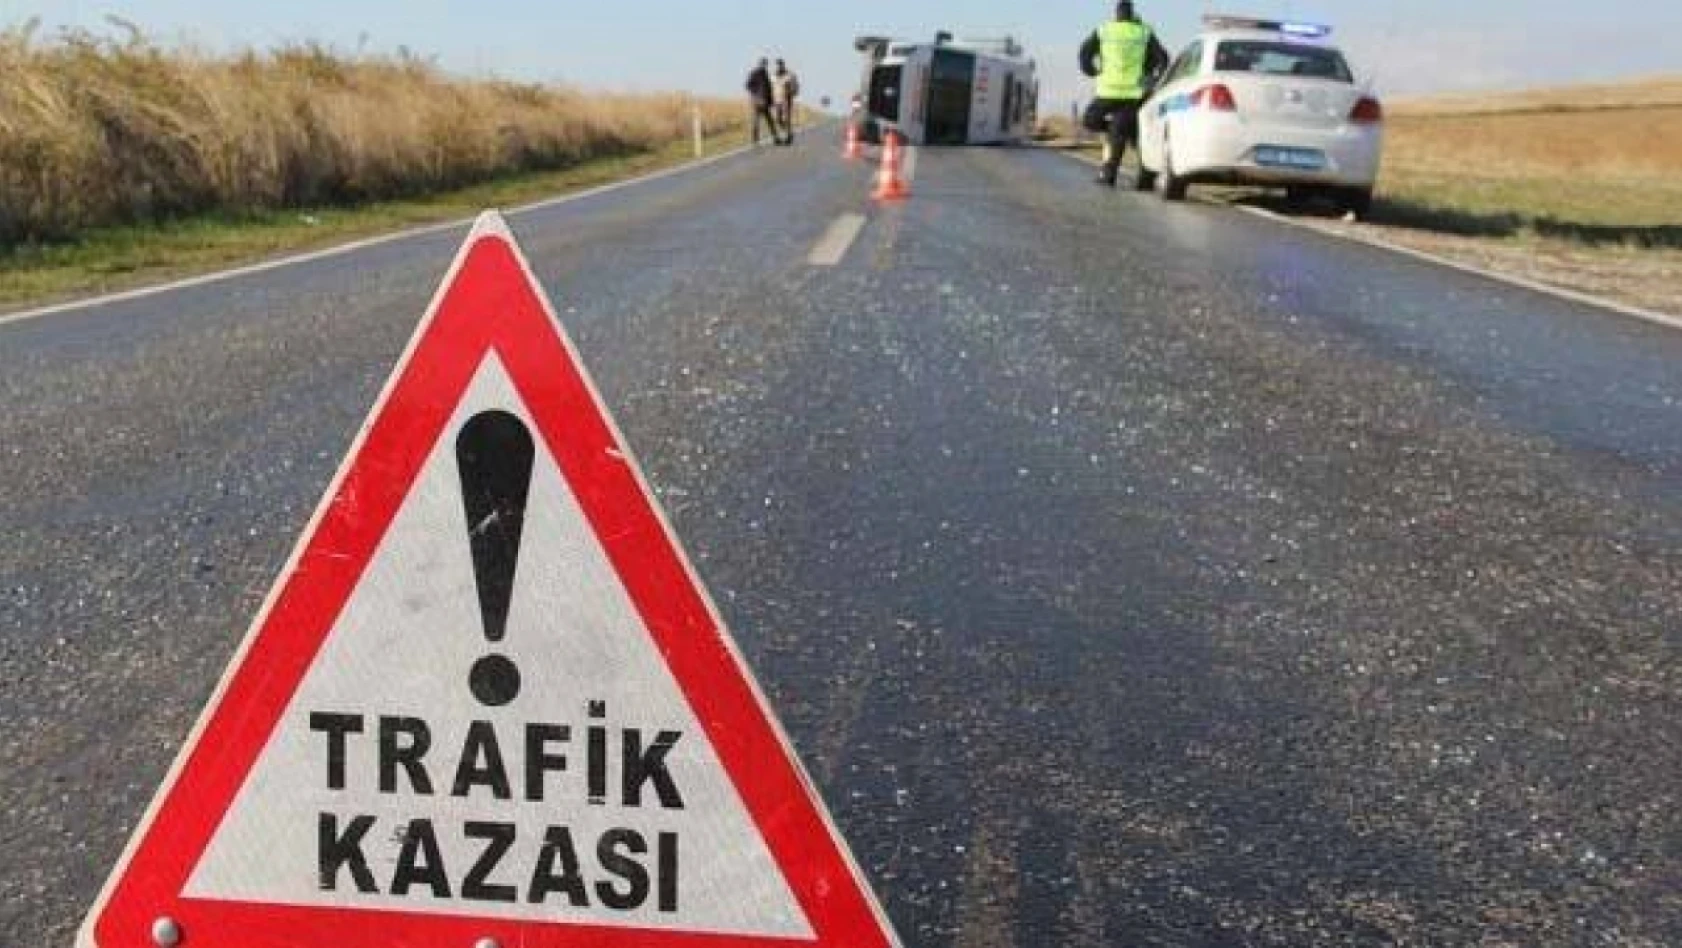 Kayseri'de kaza -Çok sayıda yaralı var!